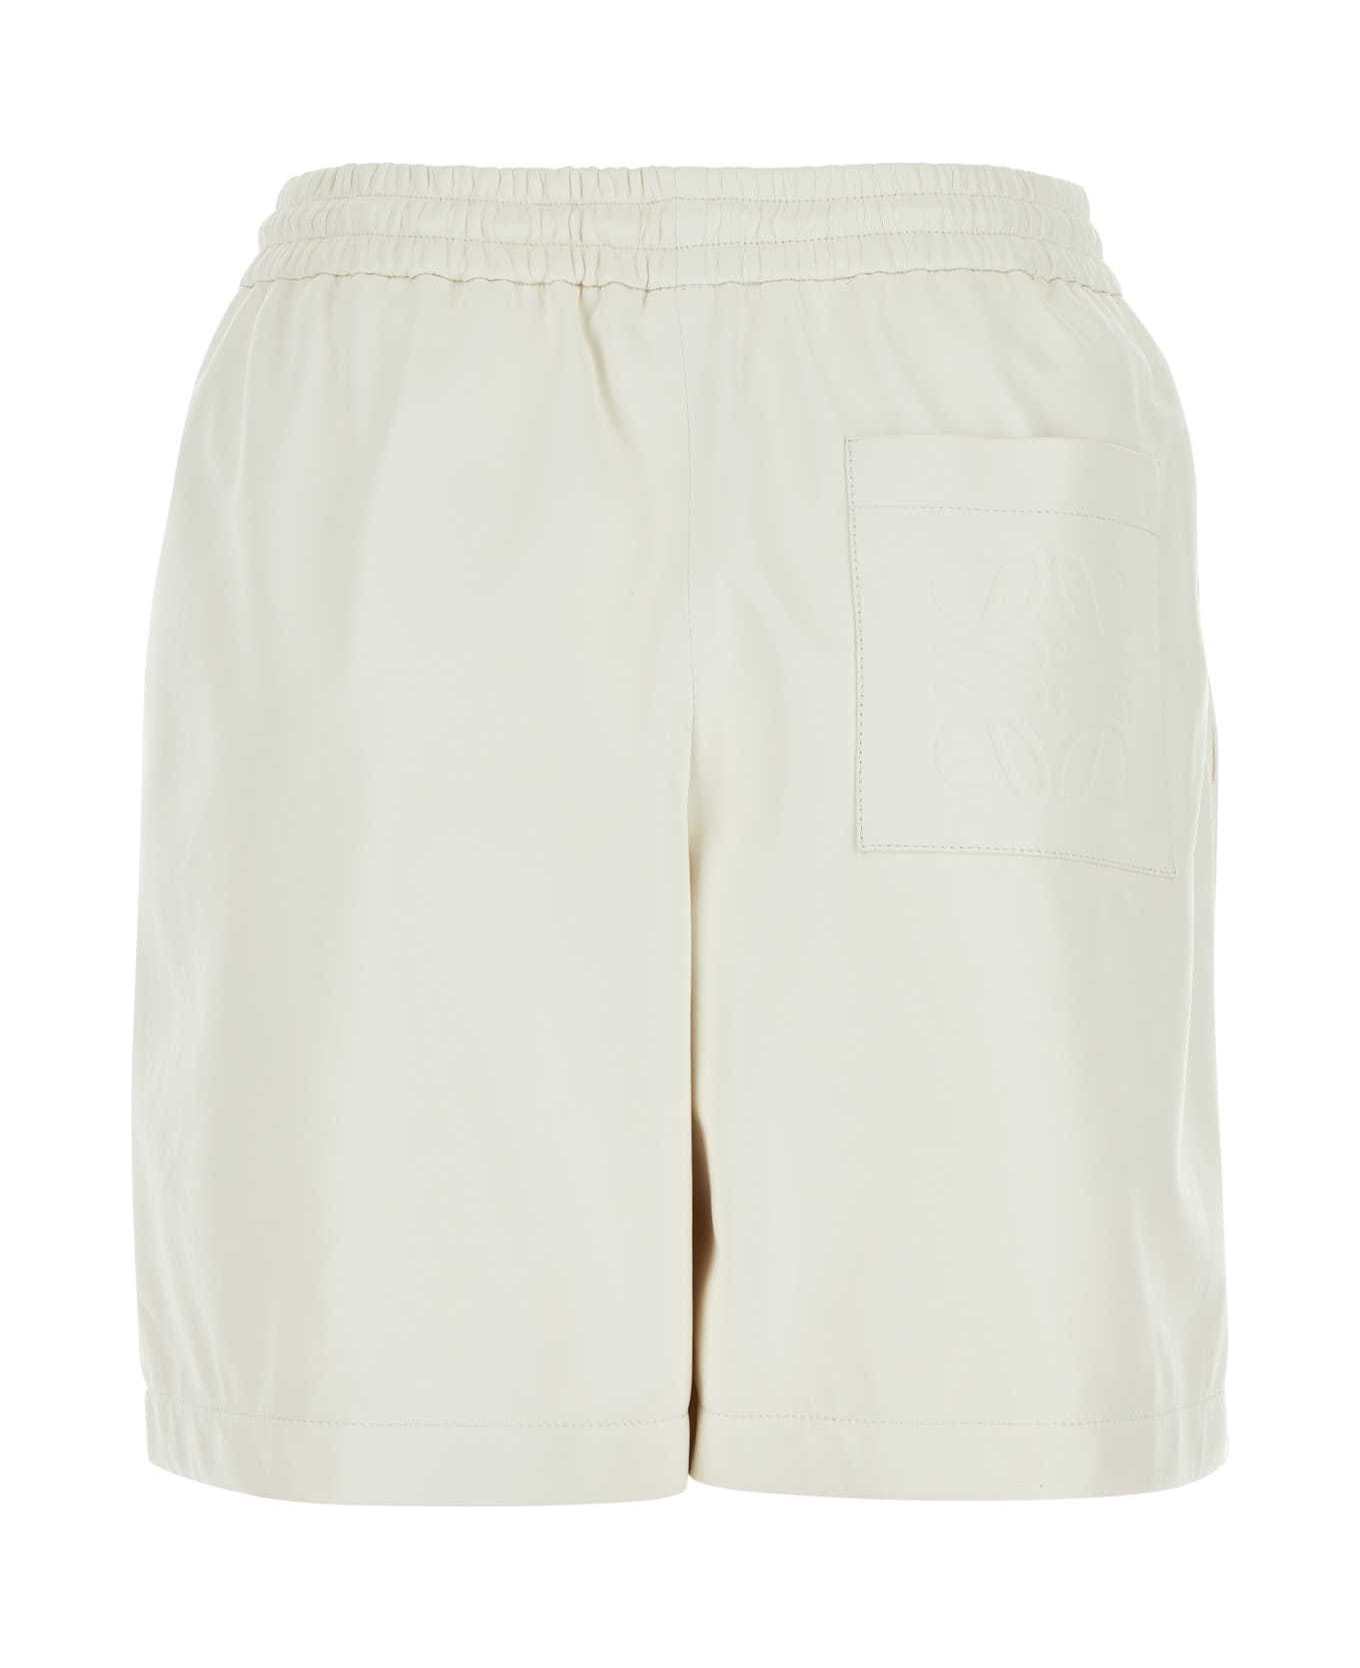 Loewe White Leather Shorts - WHITE